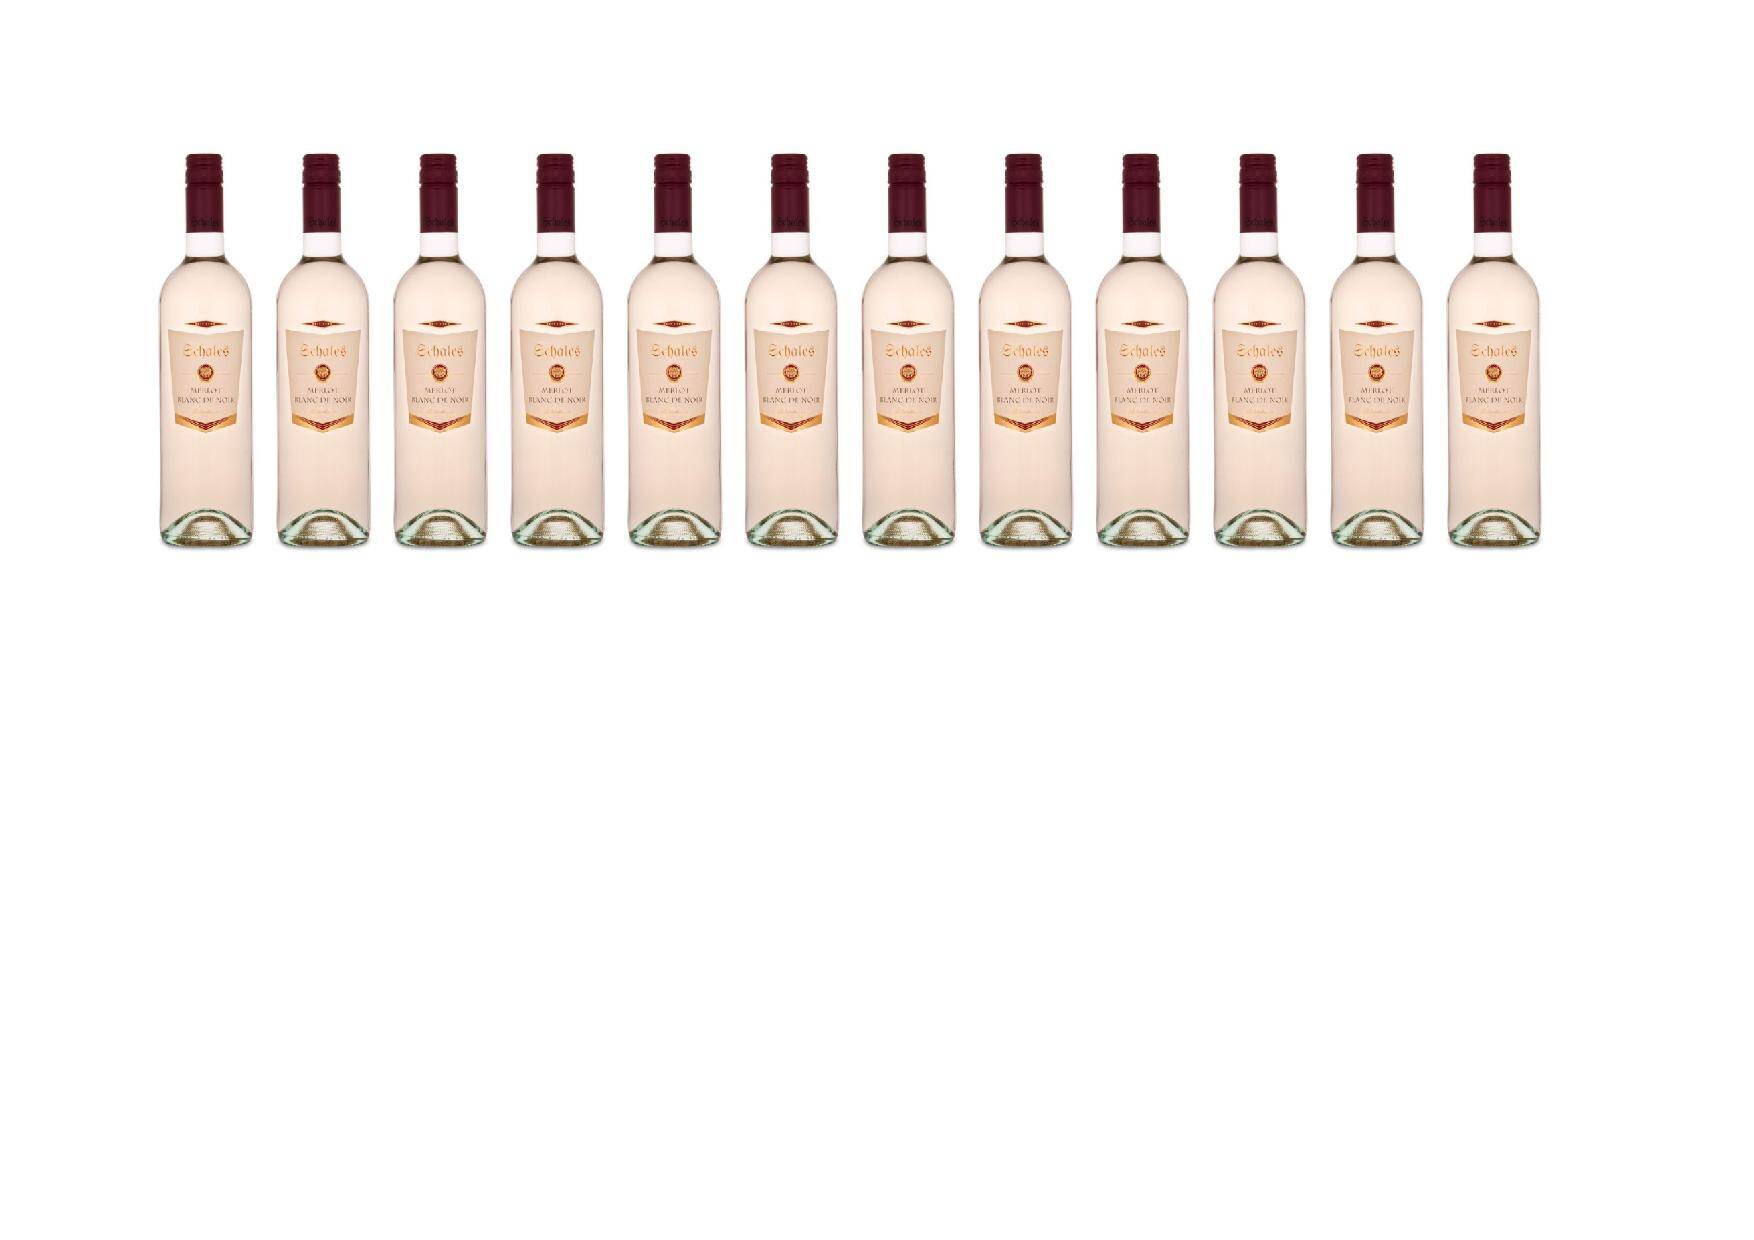 Lagerverkauf 12 Flaschen: 2019 Merlot Blanc de Noir